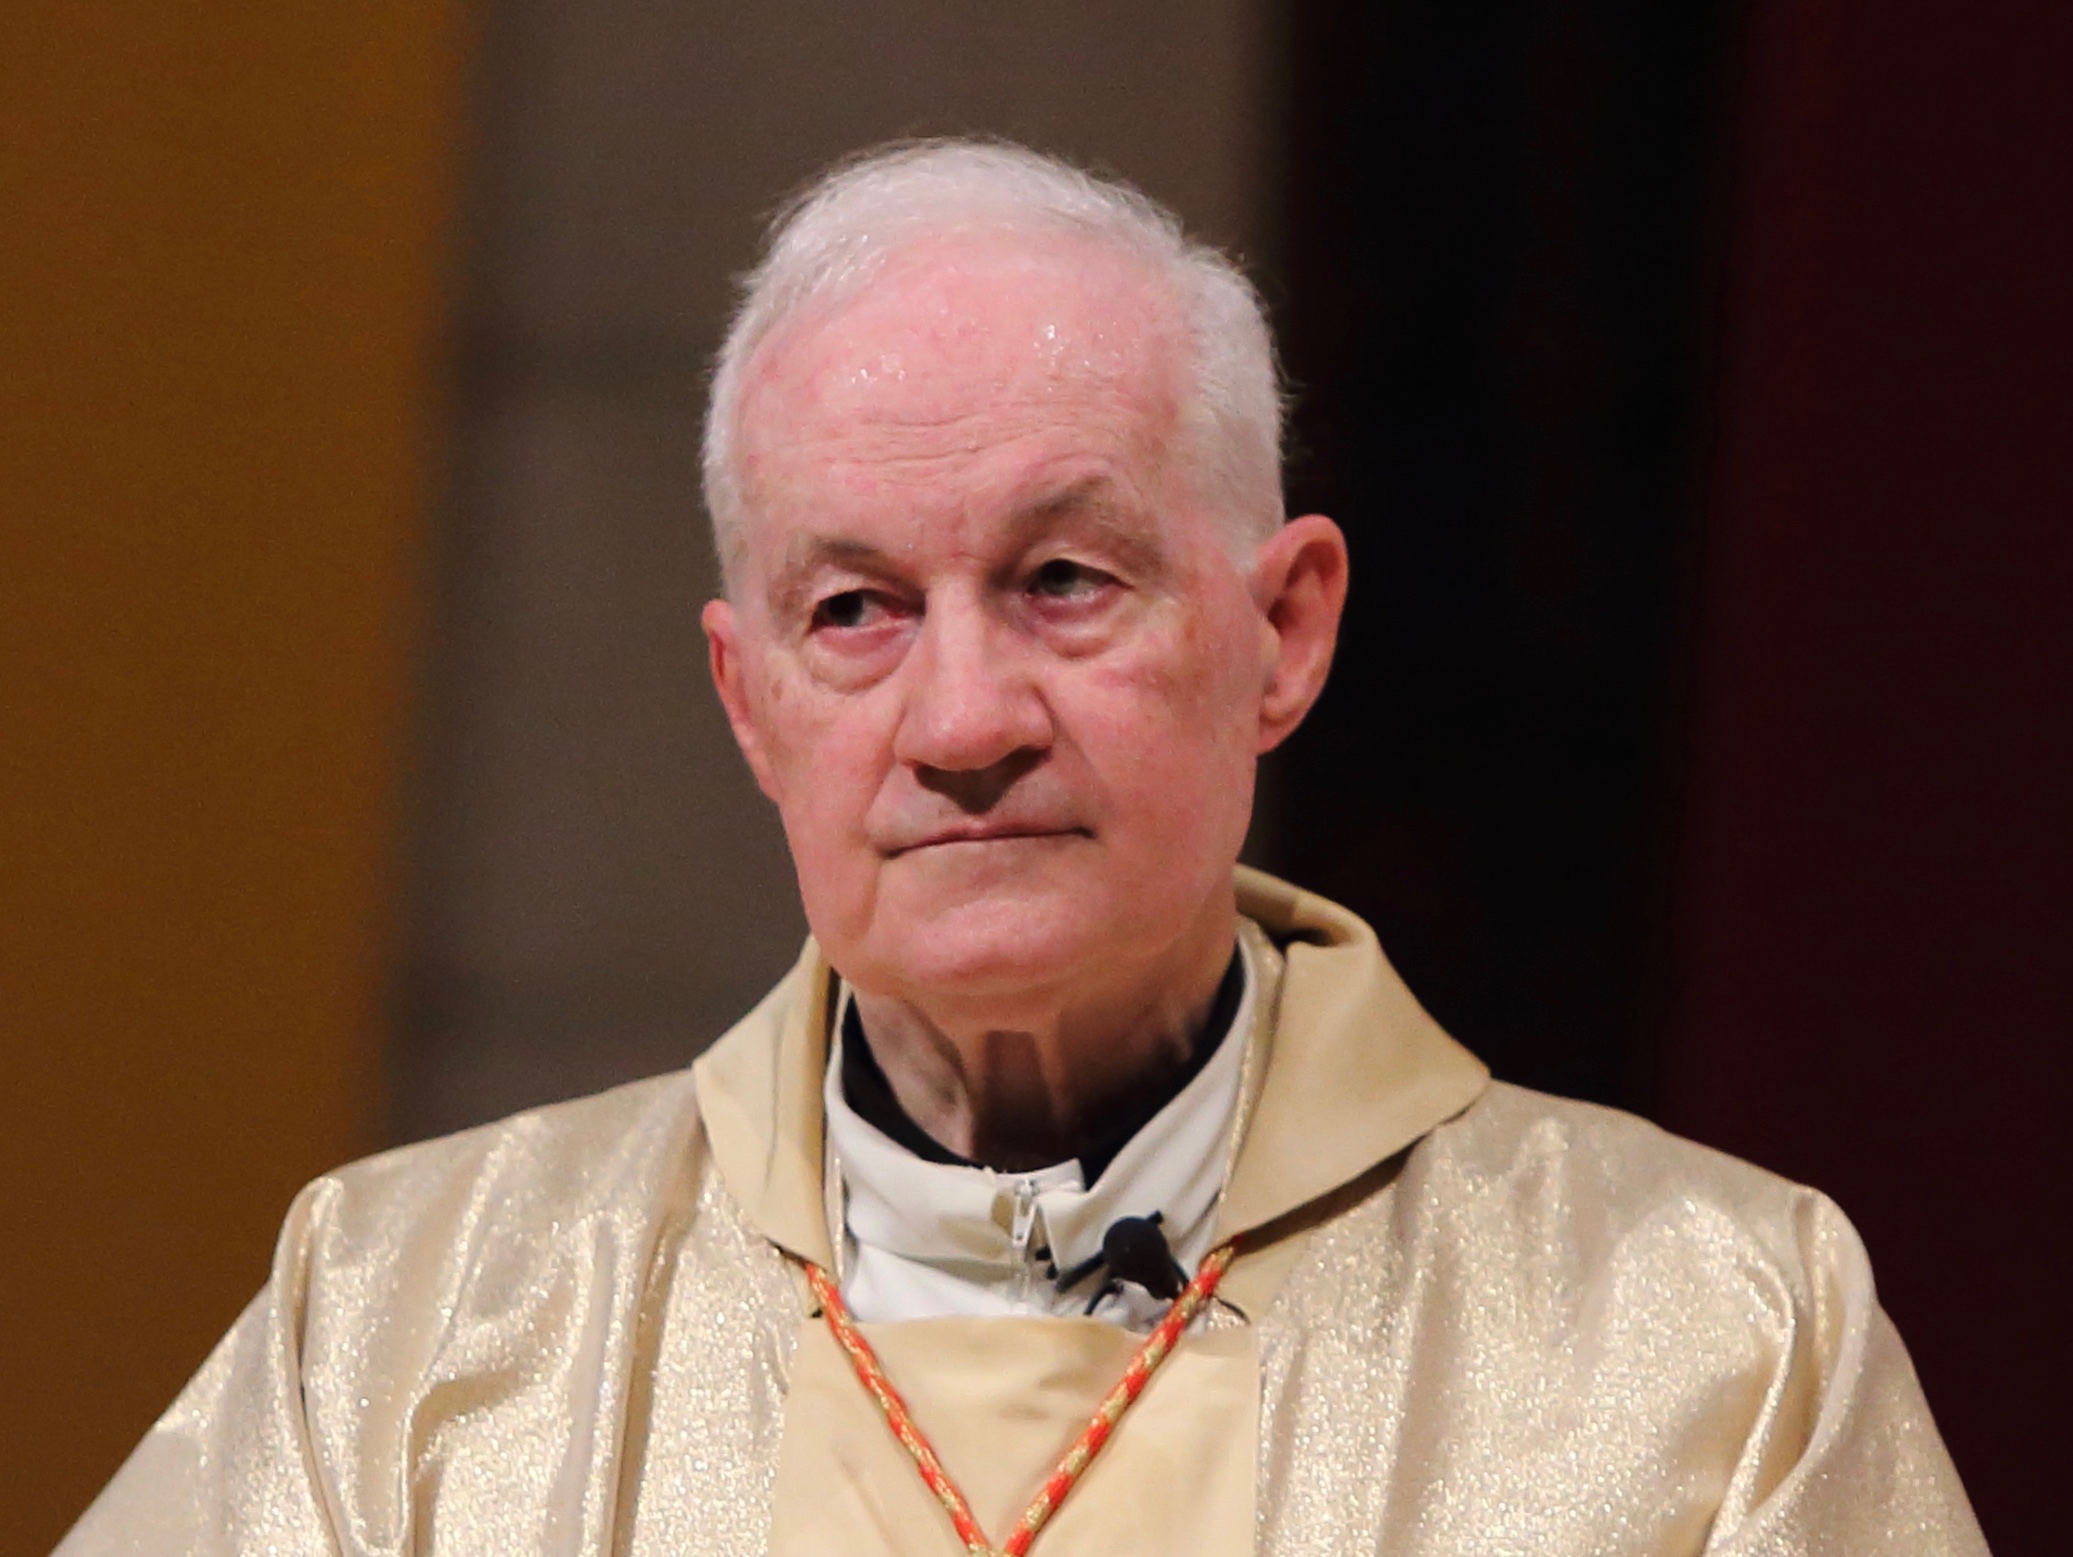 Cardinal Ouellet refutes central Viganò claim